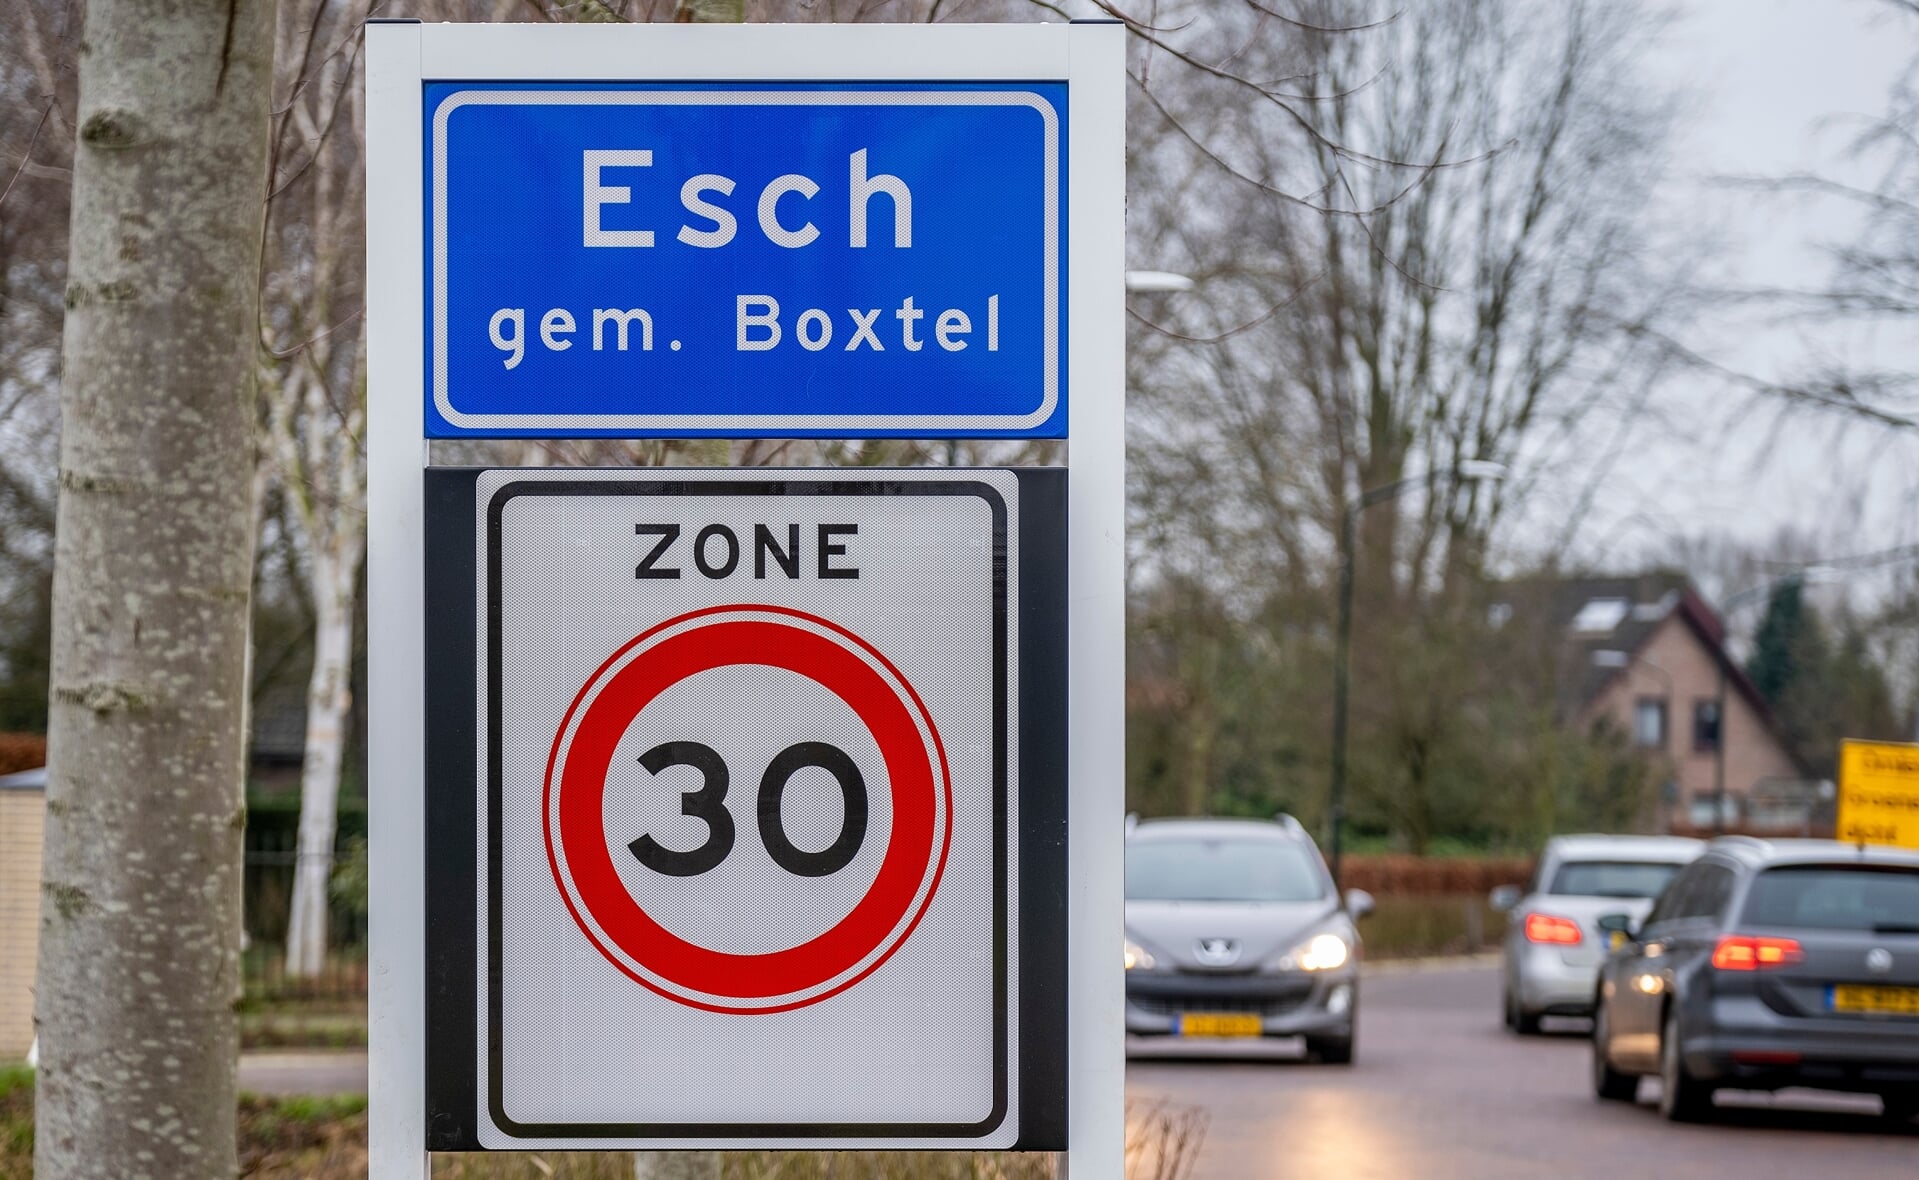 Met ingang van 1 januari 2021 maakt het dorp Esch deel uit van de gemeente Boxtel. Op de eerste werkdag van het nieuwe jaar werden de komborden vervangen. 